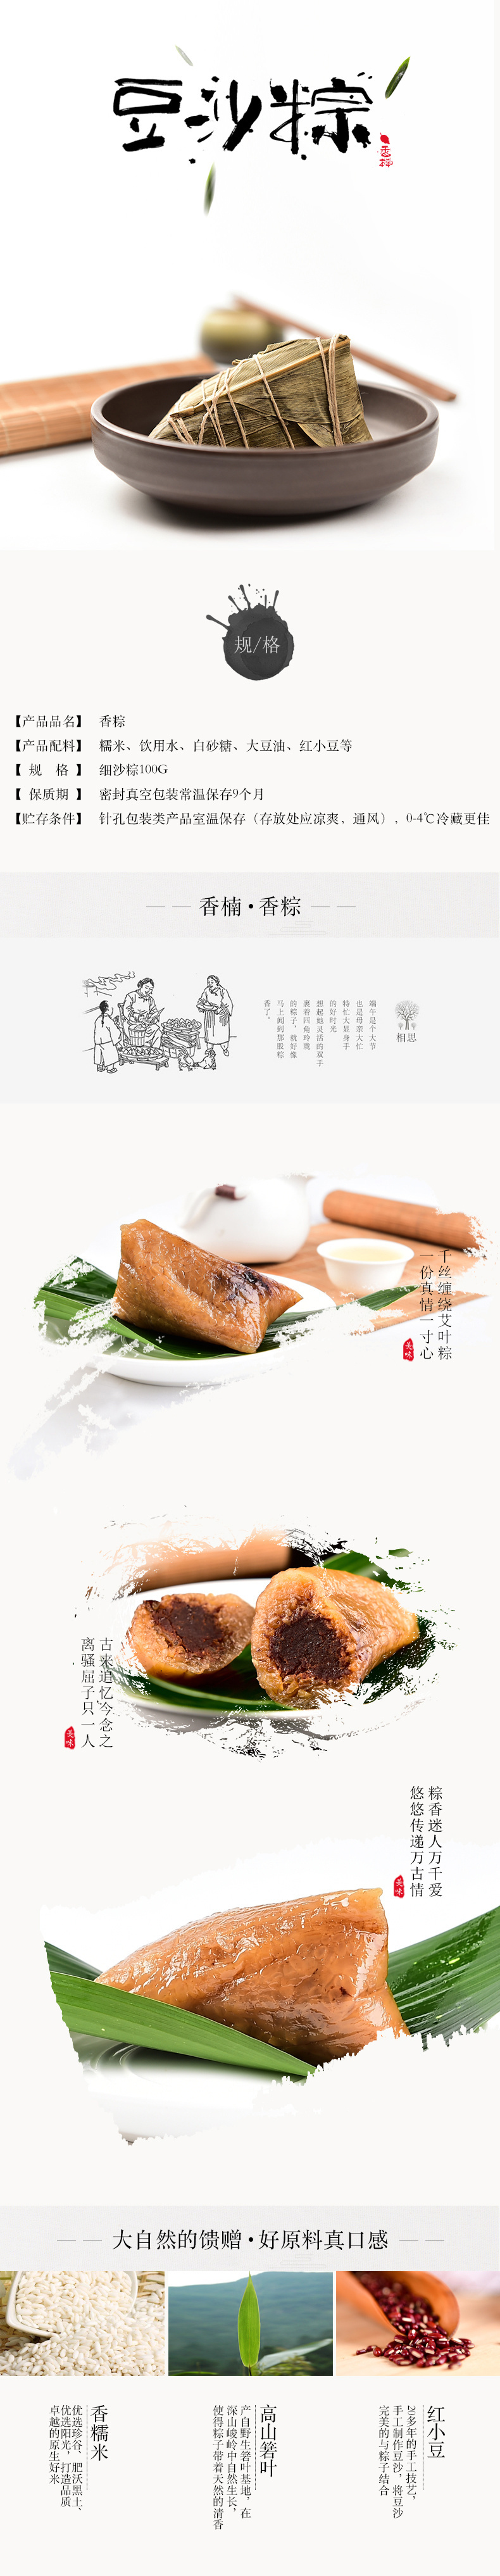 淘宝美工诺夏中国风端午节粽子豆沙大米传统食品食物详情页作品